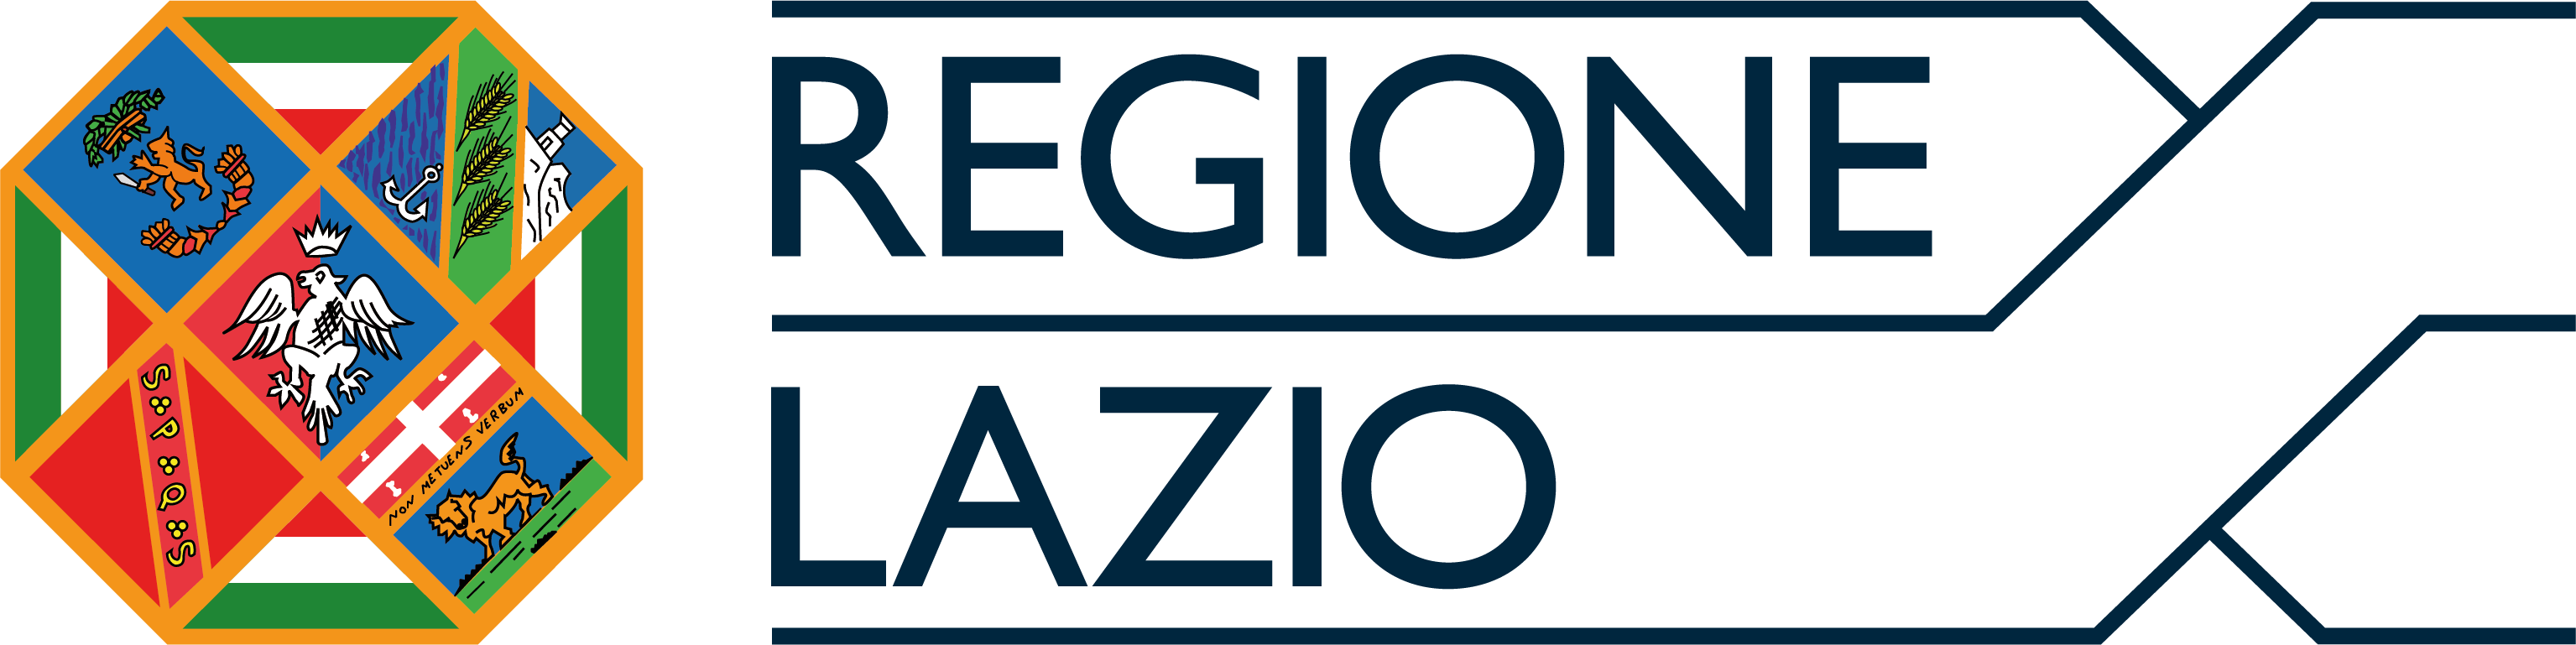 regione lazio 2021